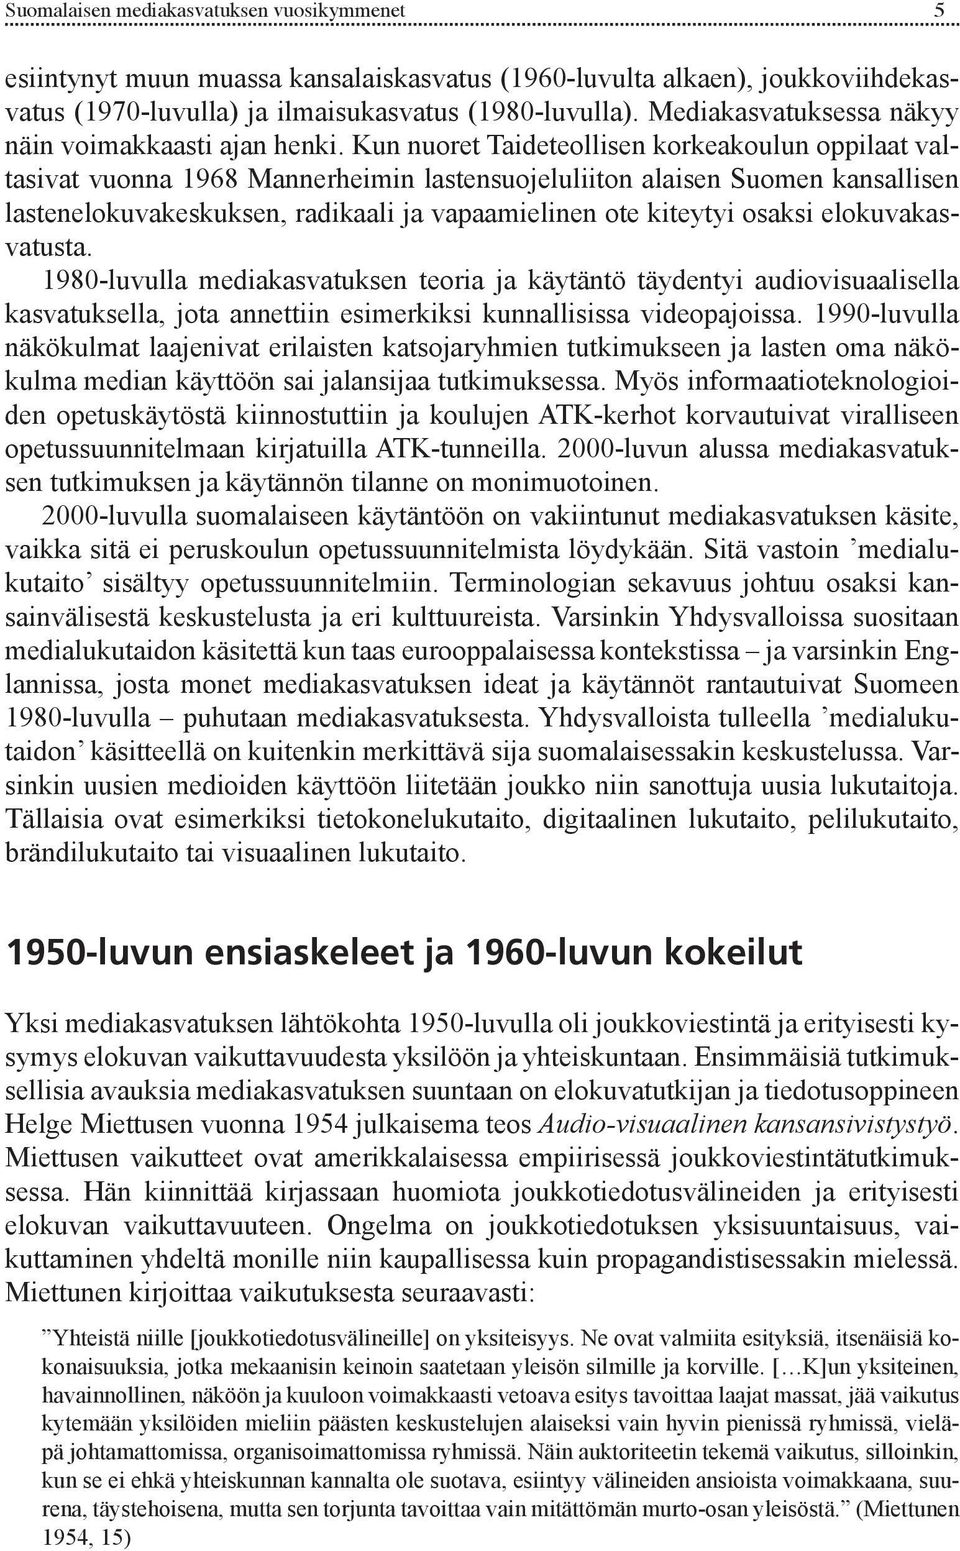 Kun nuoret Taideteollisen korkeakoulun oppilaat valtasivat vuonna 1968 Mannerheimin lastensuojeluliiton alaisen Suomen kansallisen lastenelokuvakeskuksen, radikaali ja vapaamielinen ote kiteytyi